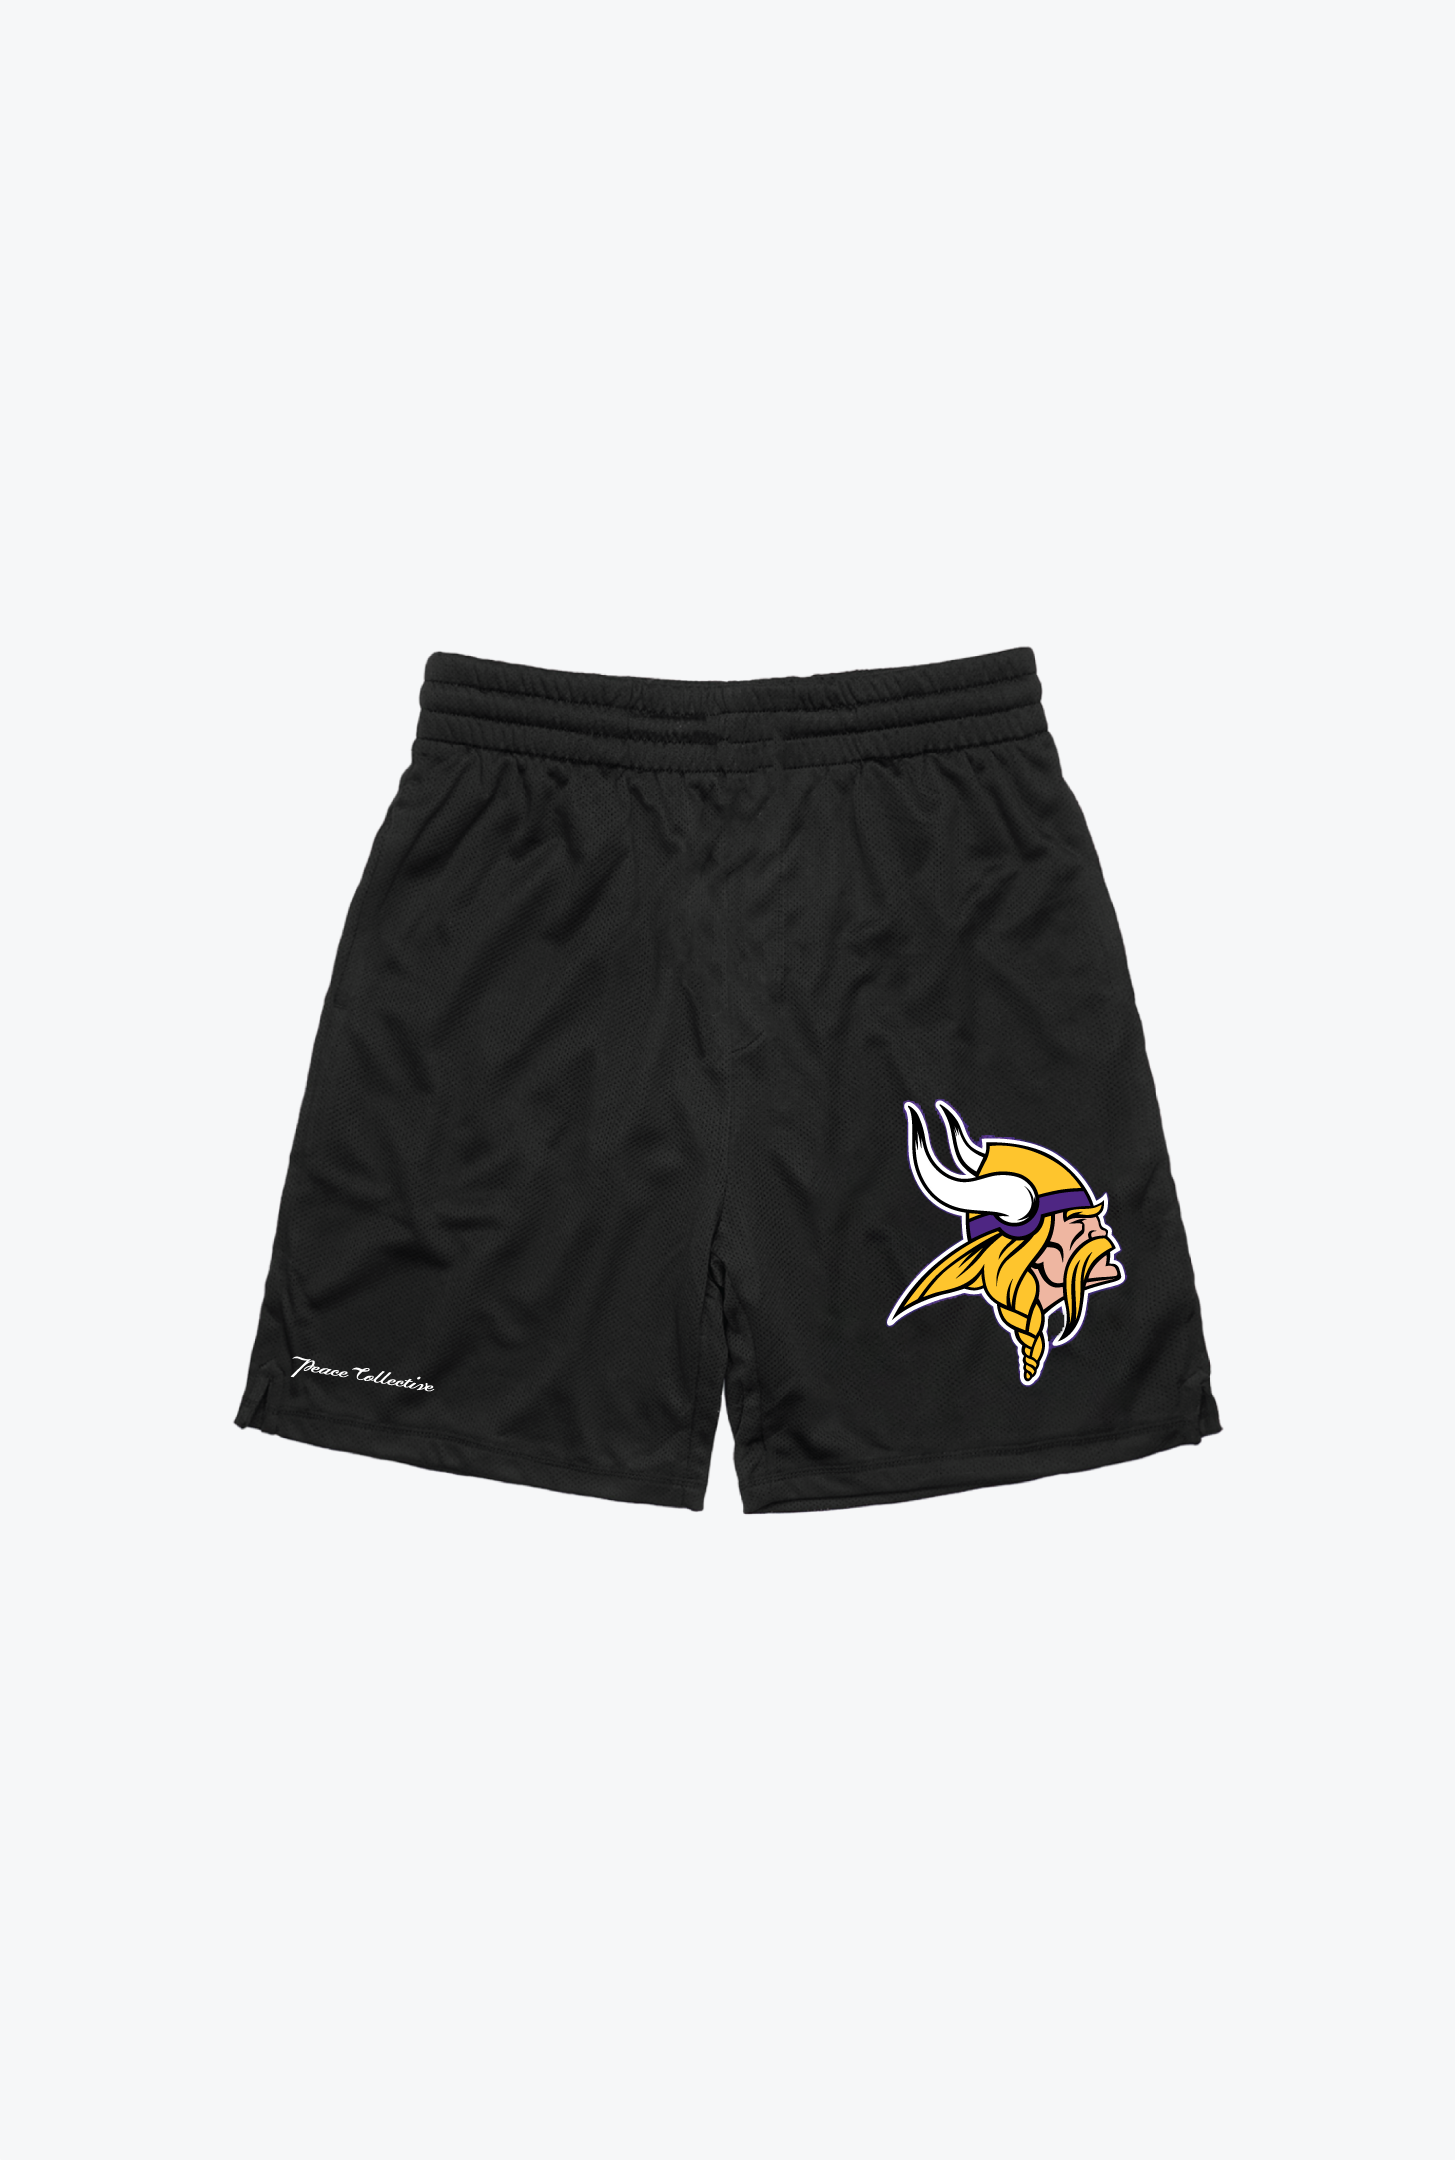 Minnesota Vikings Mesh Shorts - Purple